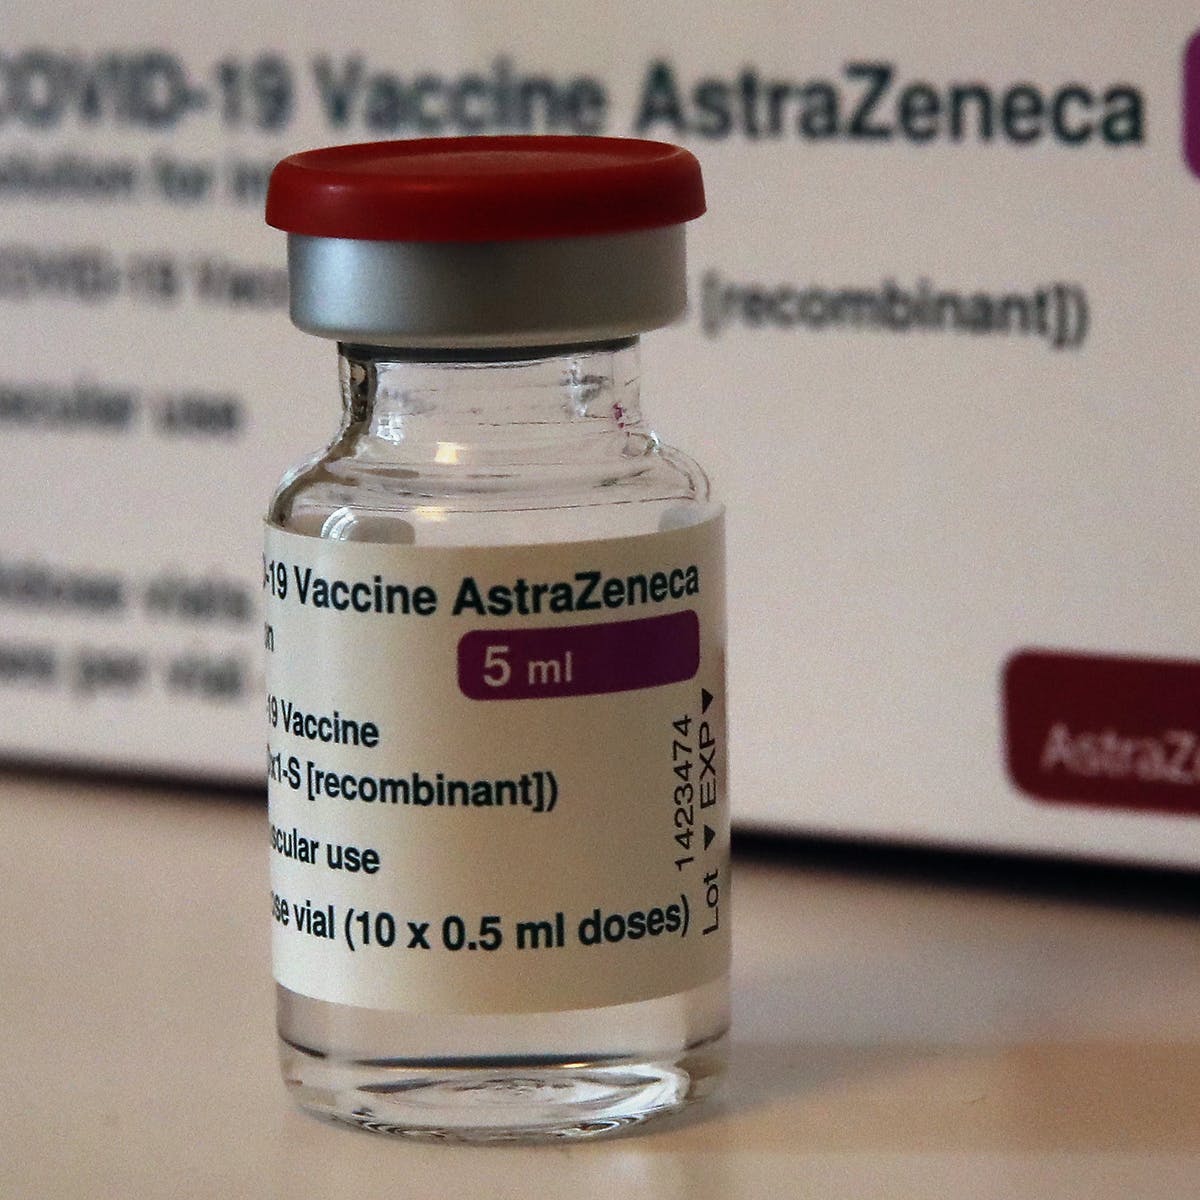 Nhu cầu vaccine AstraZeneca của người dân dưới 40 tuổi tại Australia tăng mạnh. Ảnh Conversation.jpg